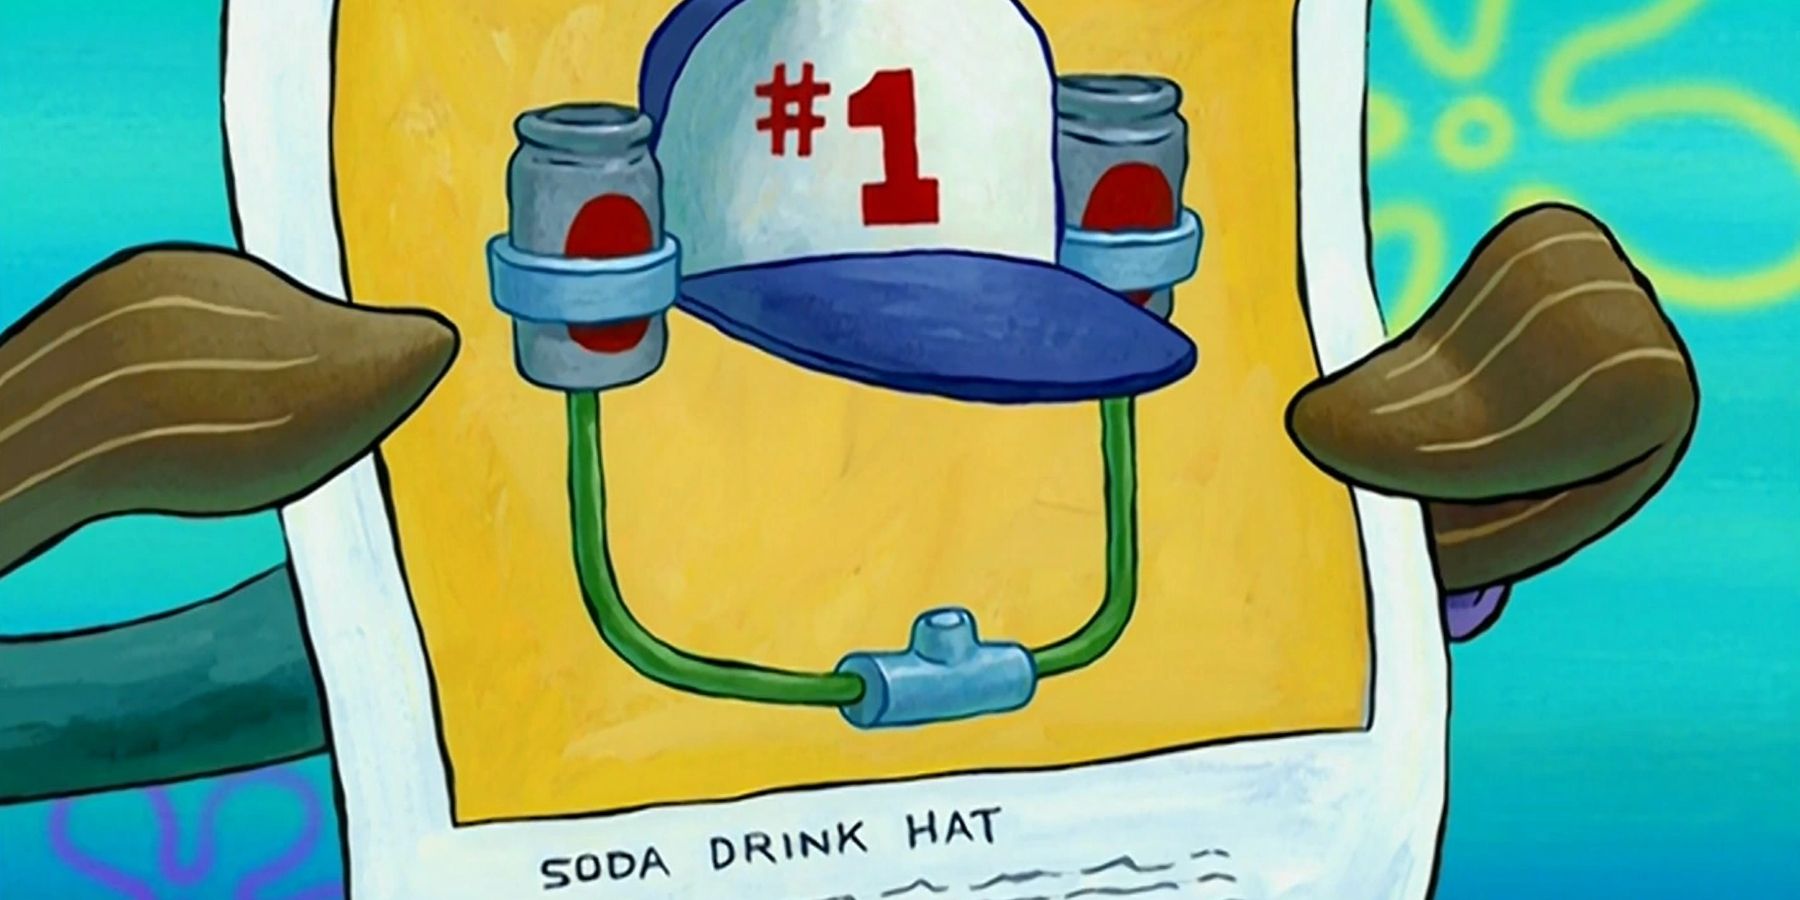 spongebob's #1 hat